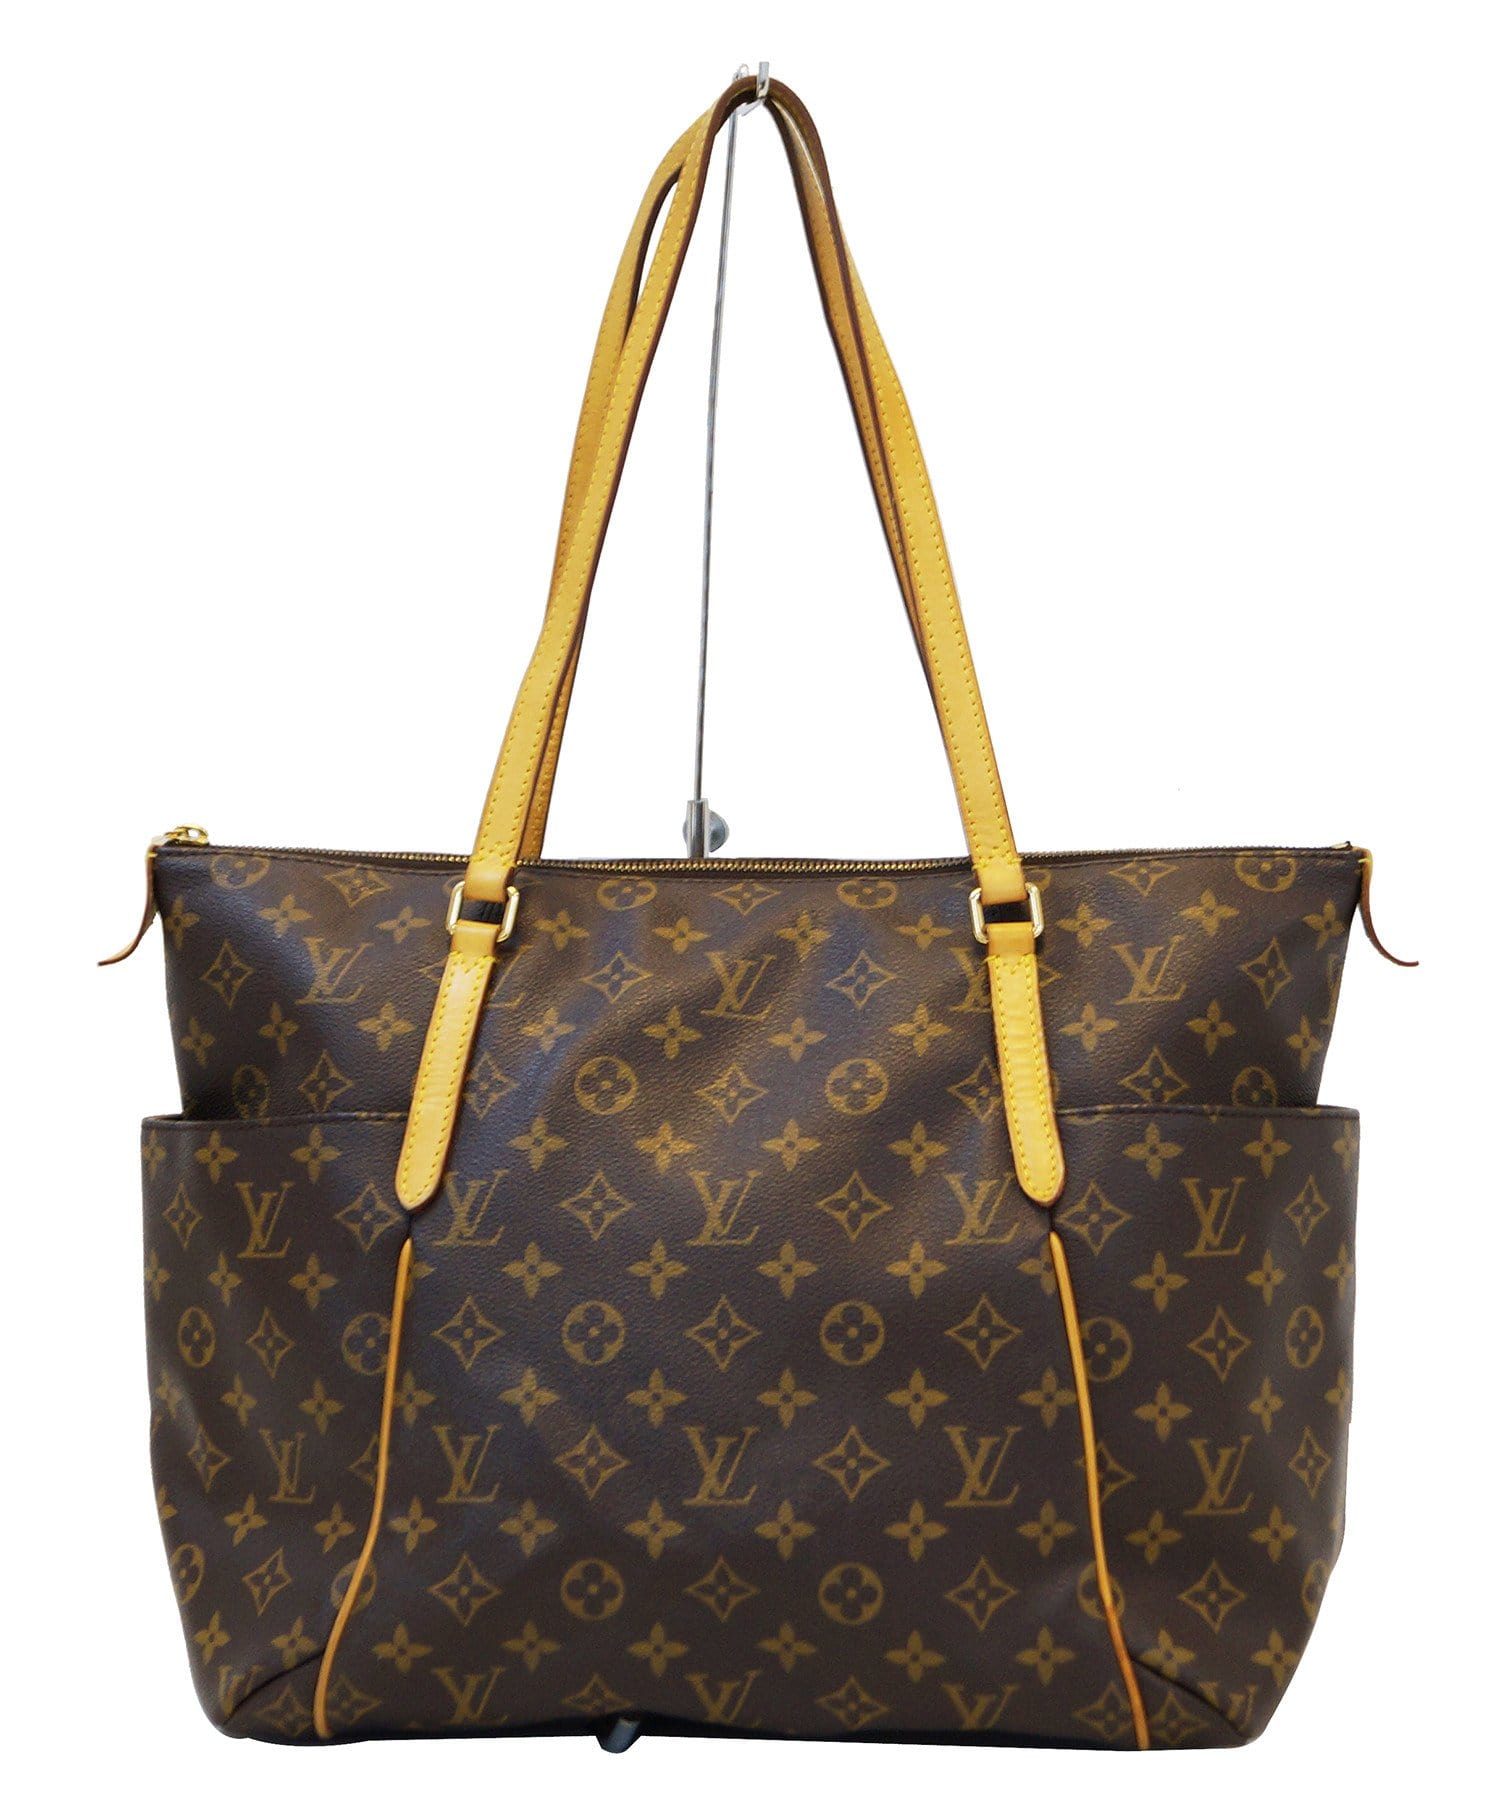 Shoulder - ep_vintage luxury Store - Bosphore - Vuitton - Louis - Monogram  - Bag - M40044 – dct - Louis Vuitton 2005 pre-owned monogram Viva Cite PM  shoulder bag - Pochette